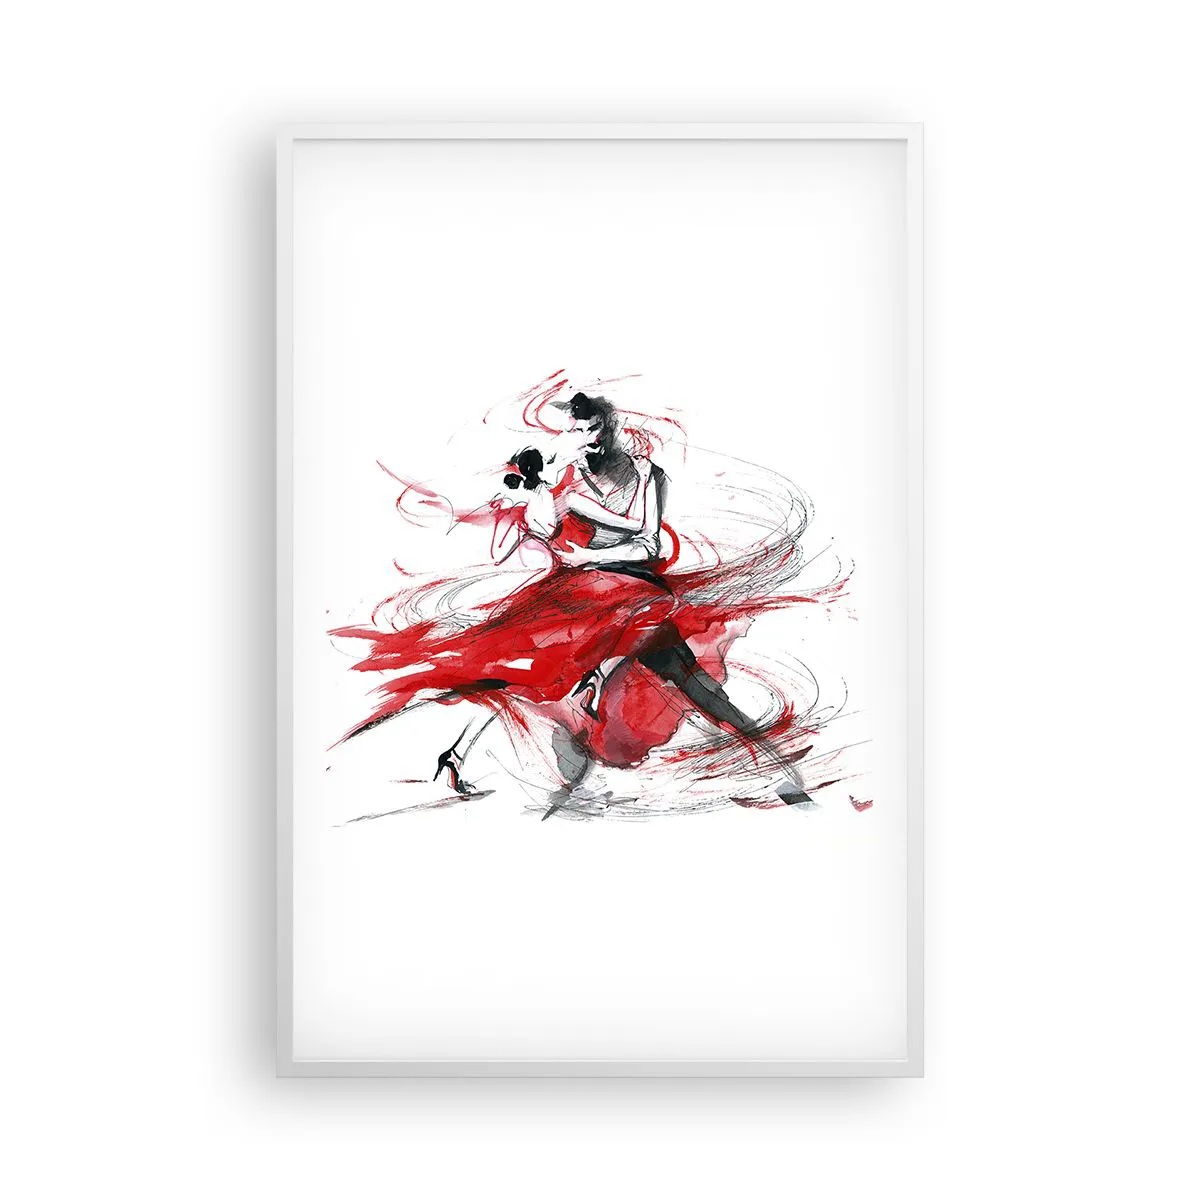 Póster en marco blanco Arttor 61x91 cm - El tango: el ritmo de la pasión - Abstracción, Baile, Bailarín, Tango, Gráficos, Para el salón, Para el dormitorio, Rojo, Negro, Vertical, P2WPA61x91-3052